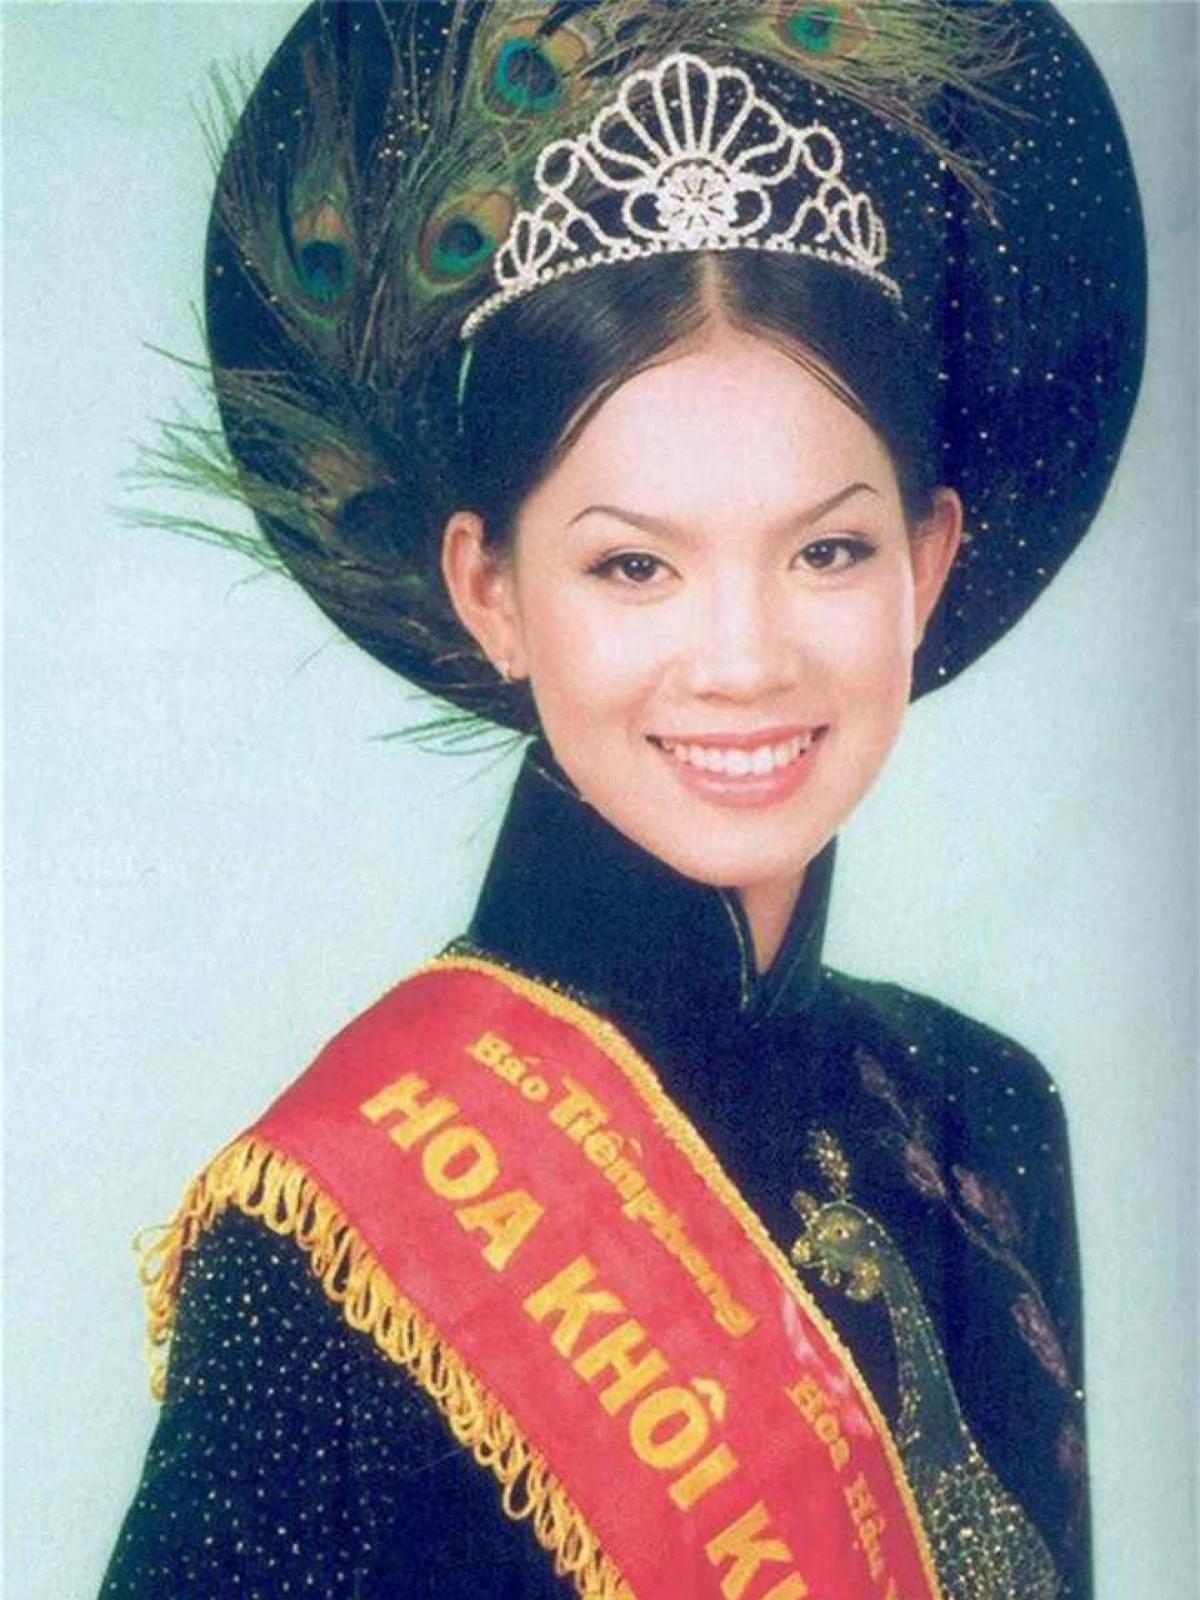 Sinh năm 1984, Á hậu 1 Hoa hậu Việt Nam 2002 Bùi Thị Hoàng Oanh là gương mặt đình đám được nhiều người yêu mến. Trong đêm chung kết cuộc thi Hoa hậu Việt Nam 2002, nhiều người dự đoán cô có thể đoại ngôi vị cao nhất nhưng cuối cùng Hoàng Oanh chỉ đạt Á hậu 1. Tại thời điểm gần 20 năm về trước, Hoàng Oanh được xem là một người mẫu chuyên nghiệp của làng giải trí. Mới 15 tuổi đã cao 1m72 và khi 17 tuổi, cô trở thành gương mặt quảng cáo quen thuộc của rất nhiều các nhãn hàng nổi tiếng.